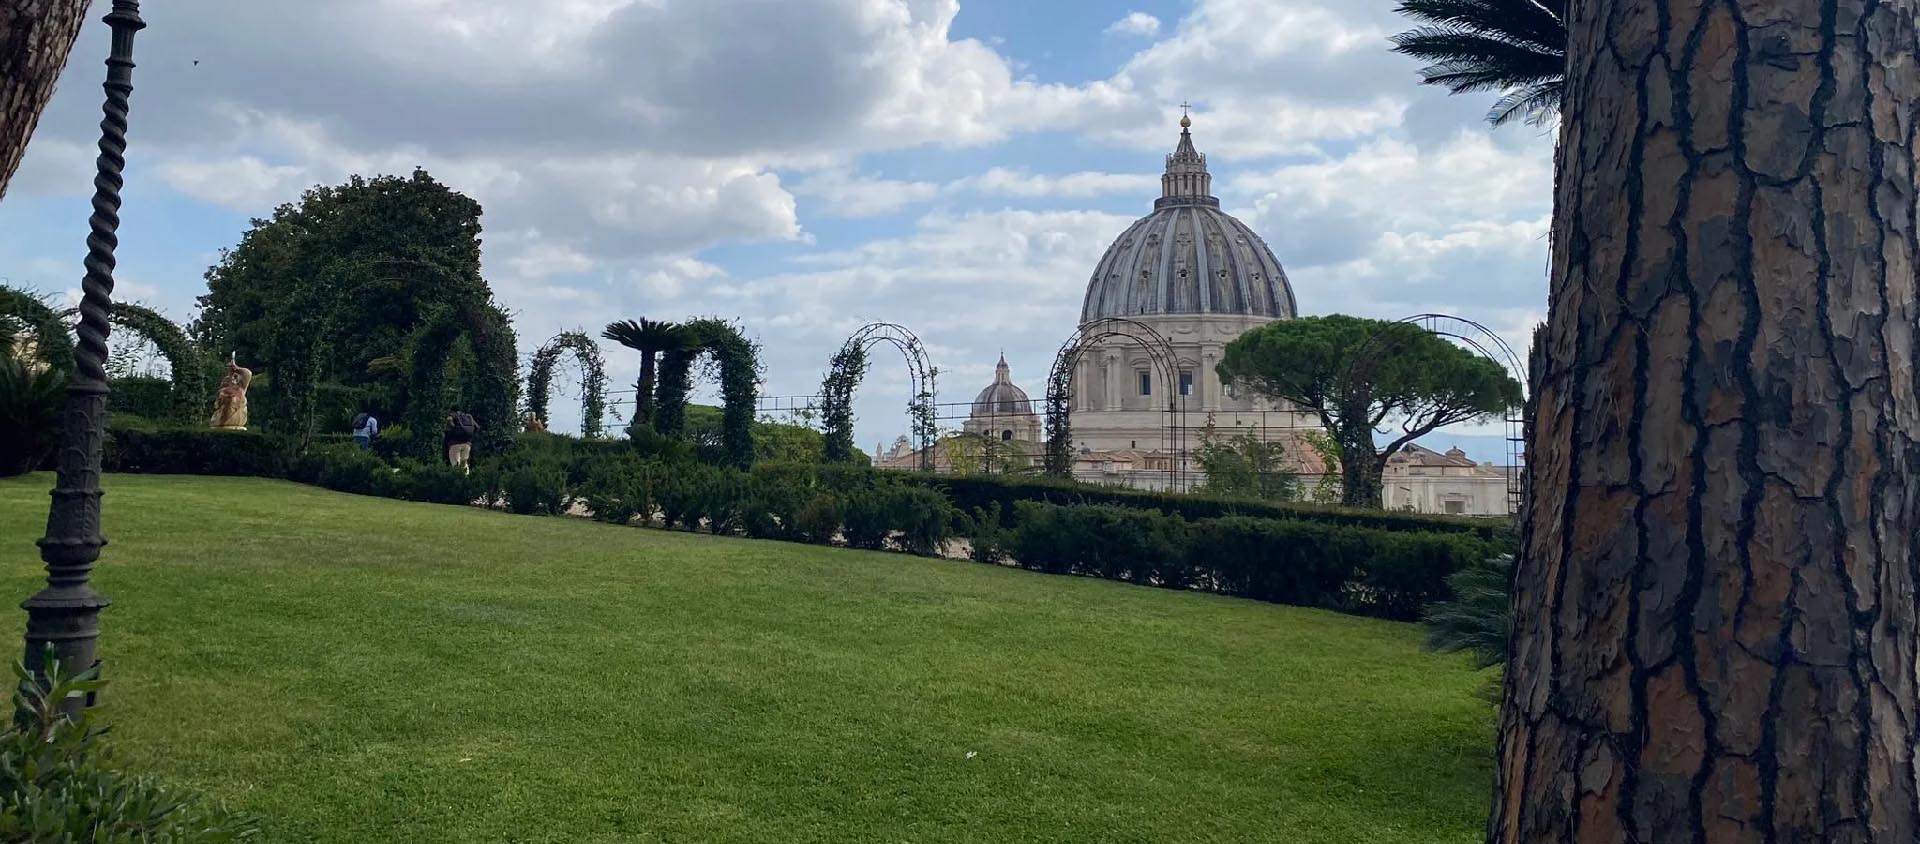 Le nouveau système d'arrosage installé dans les jardins du Vatican a permis d'économiser 60% d'eau | © I.Media